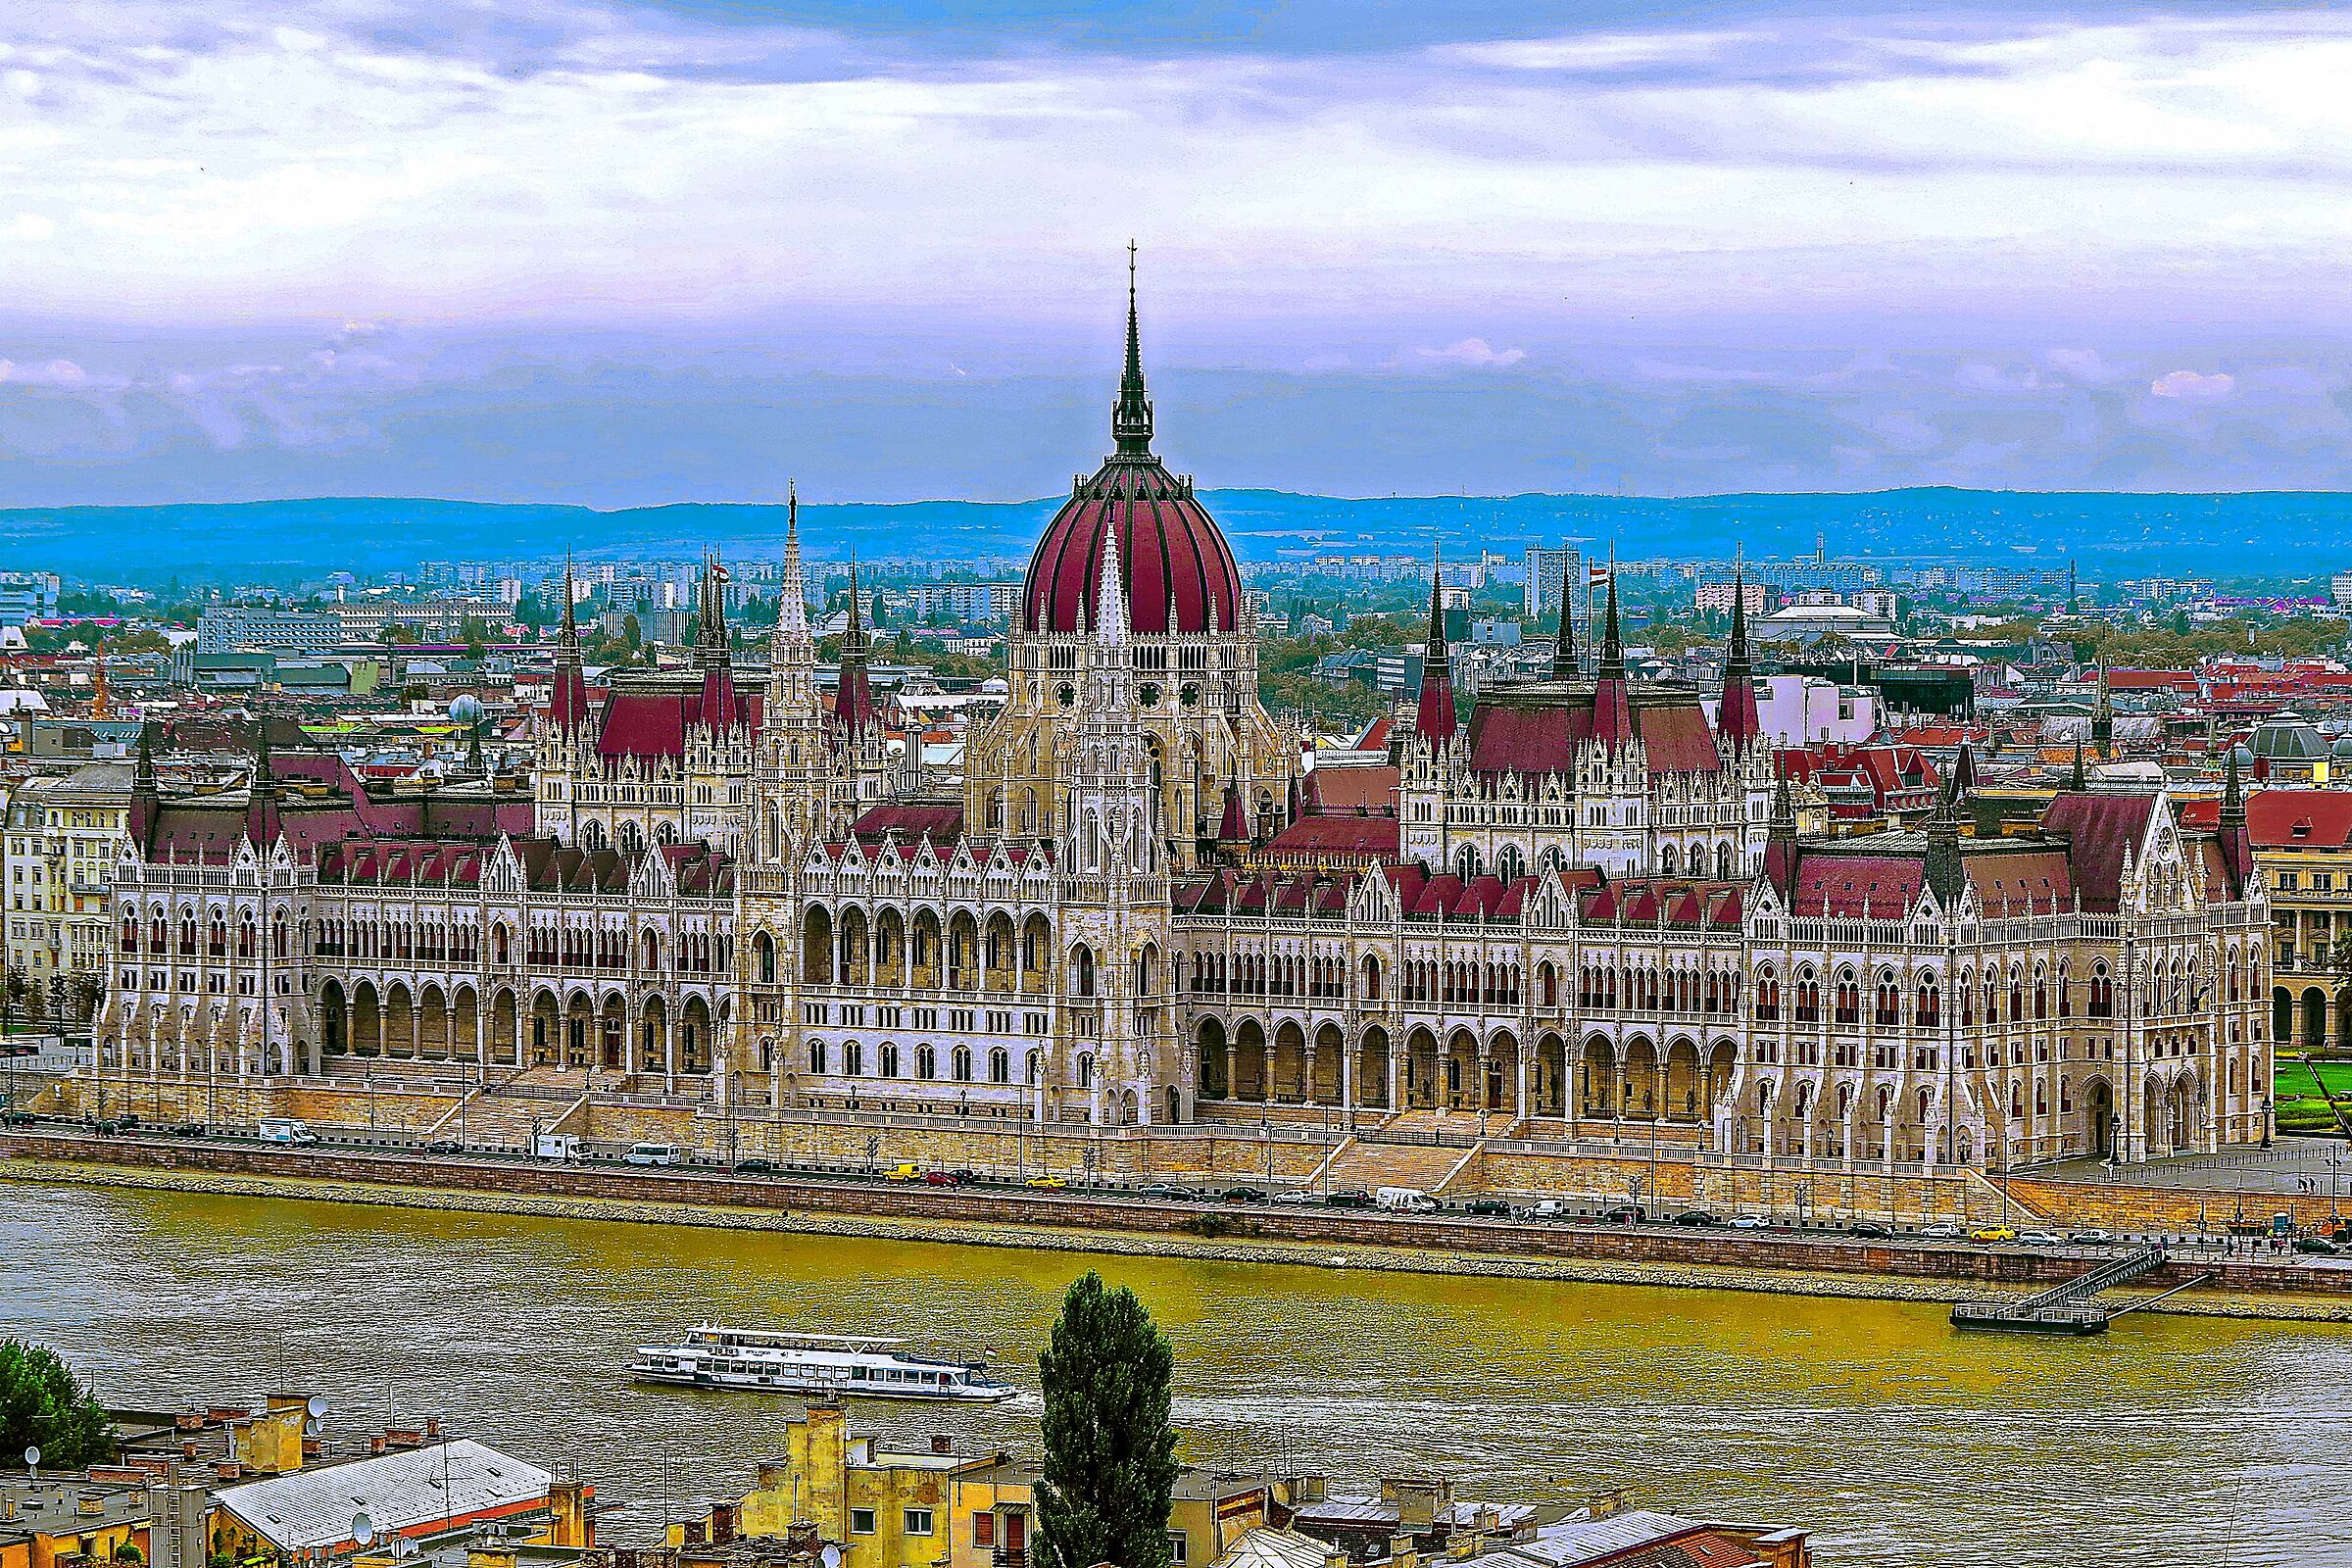 Budapest Parliament...